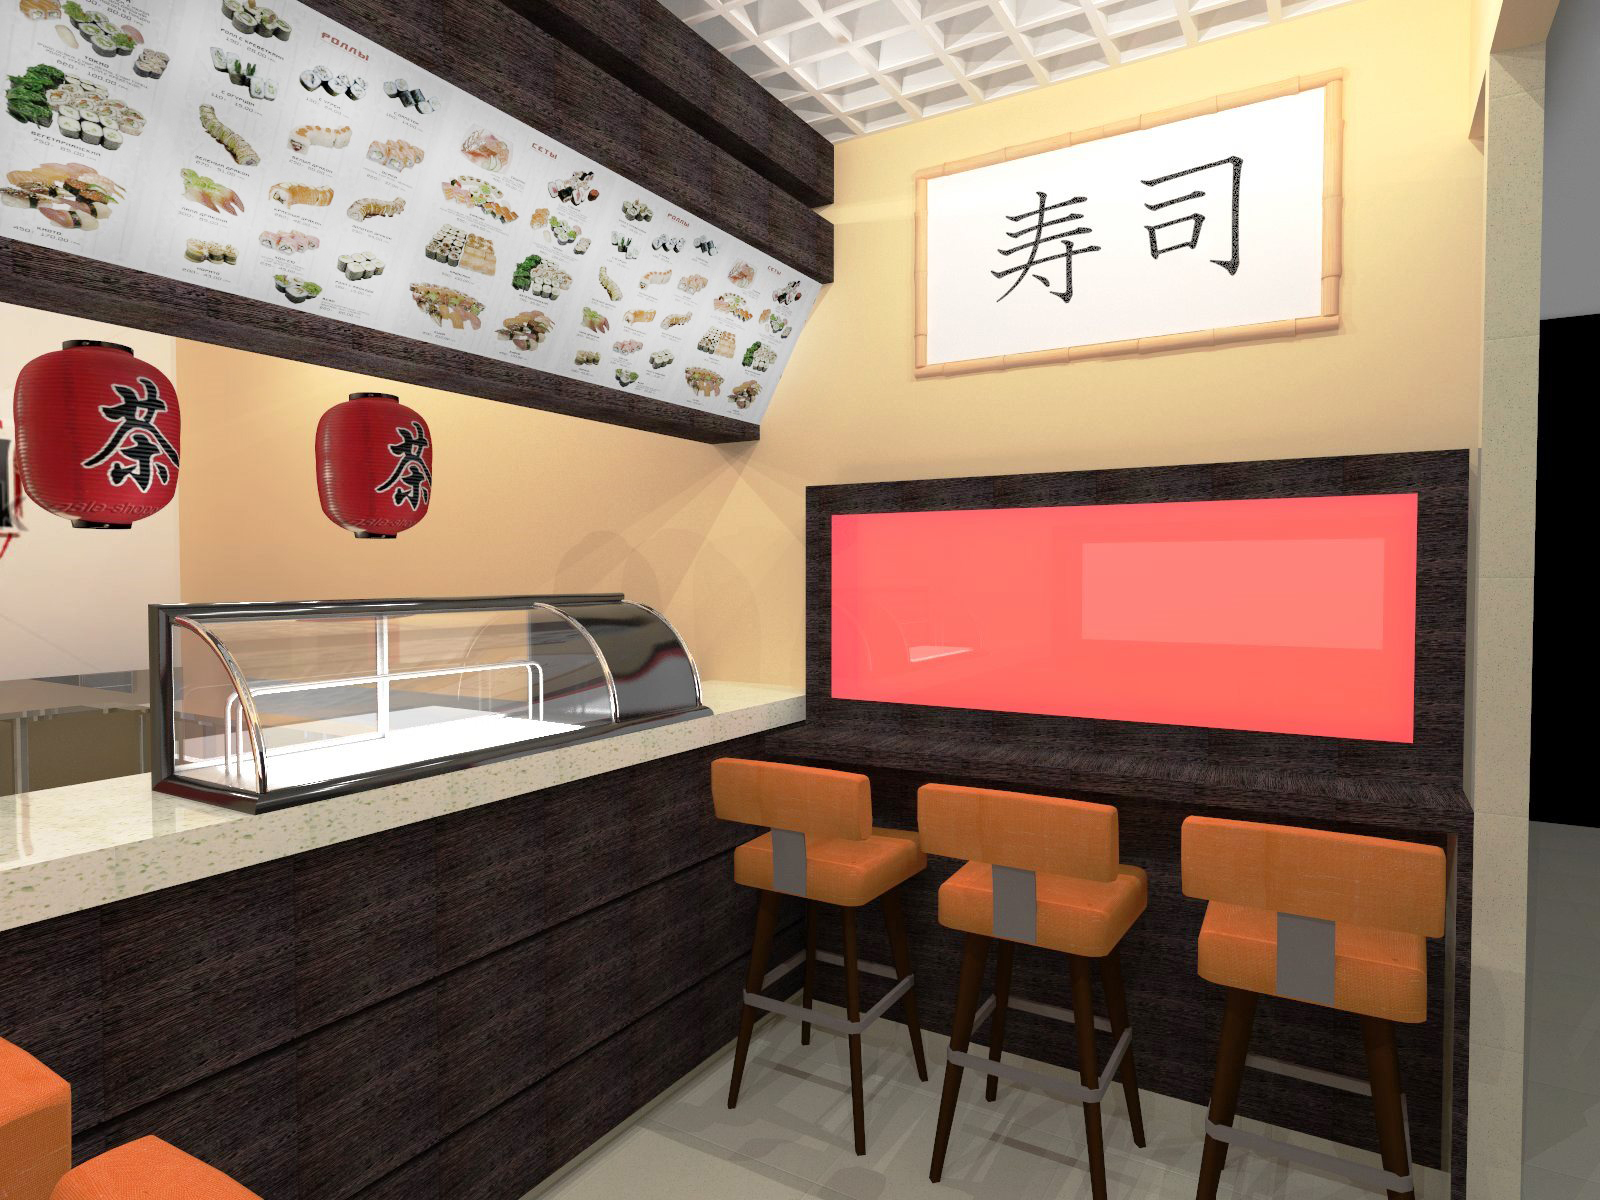 Сайт японского ресторана. Суши бар интерьер. Кафе в японском стиле. Суши бар в Японии. Японский стиль в интерьере.